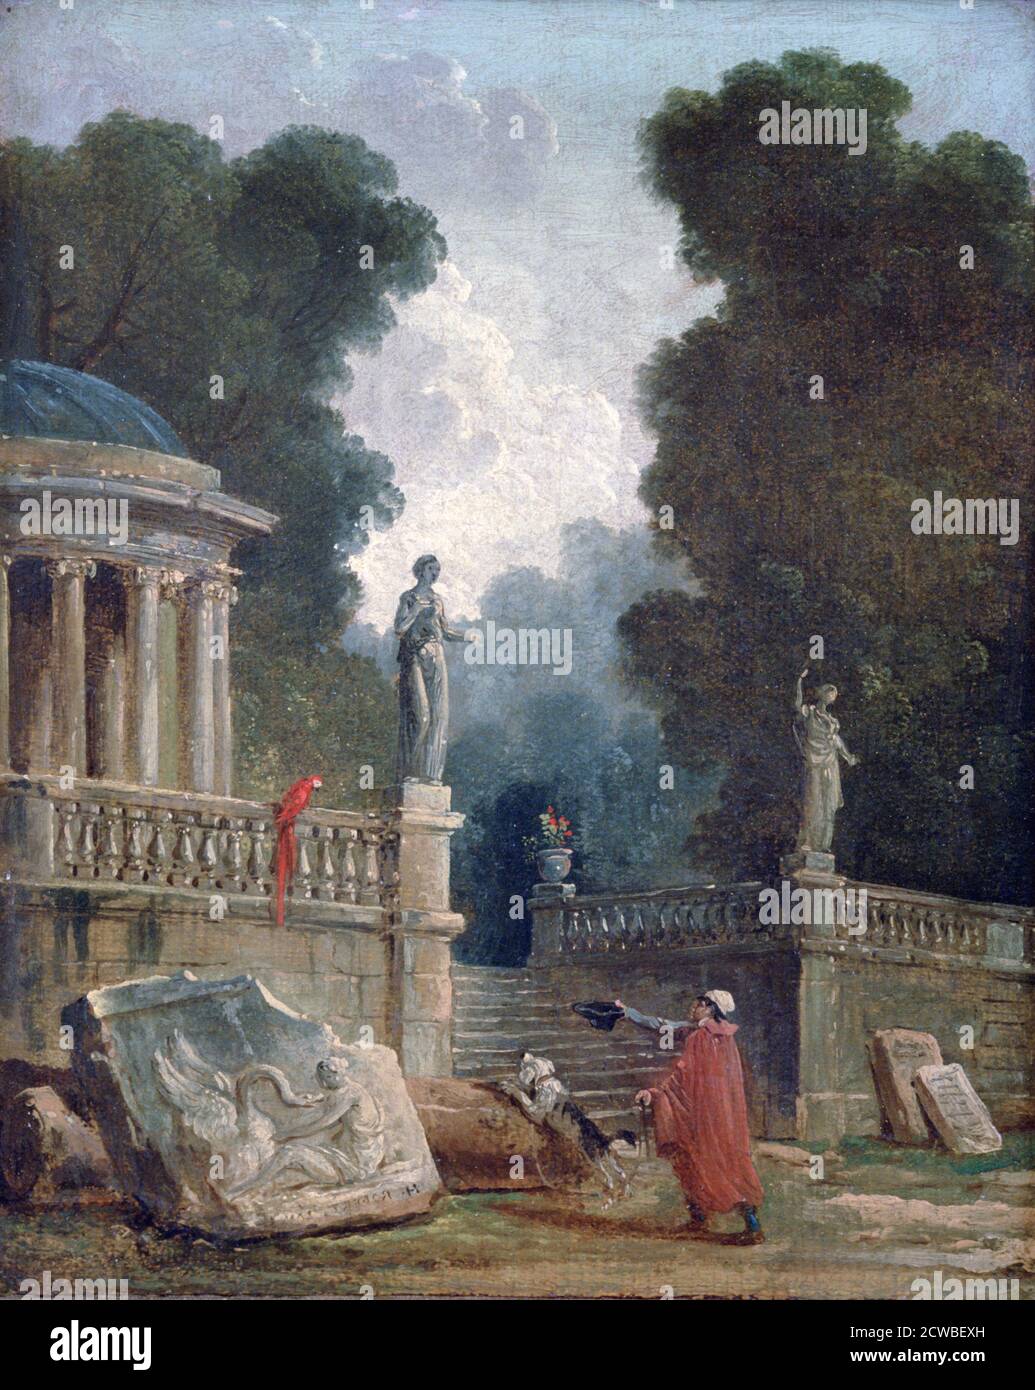 Der Bettler und der Papagei', c1750-1808, Künstler: Hubert Robert. Hubert Robert (1733-1808) war ein französischer Rokoko-Maler. Stockfoto